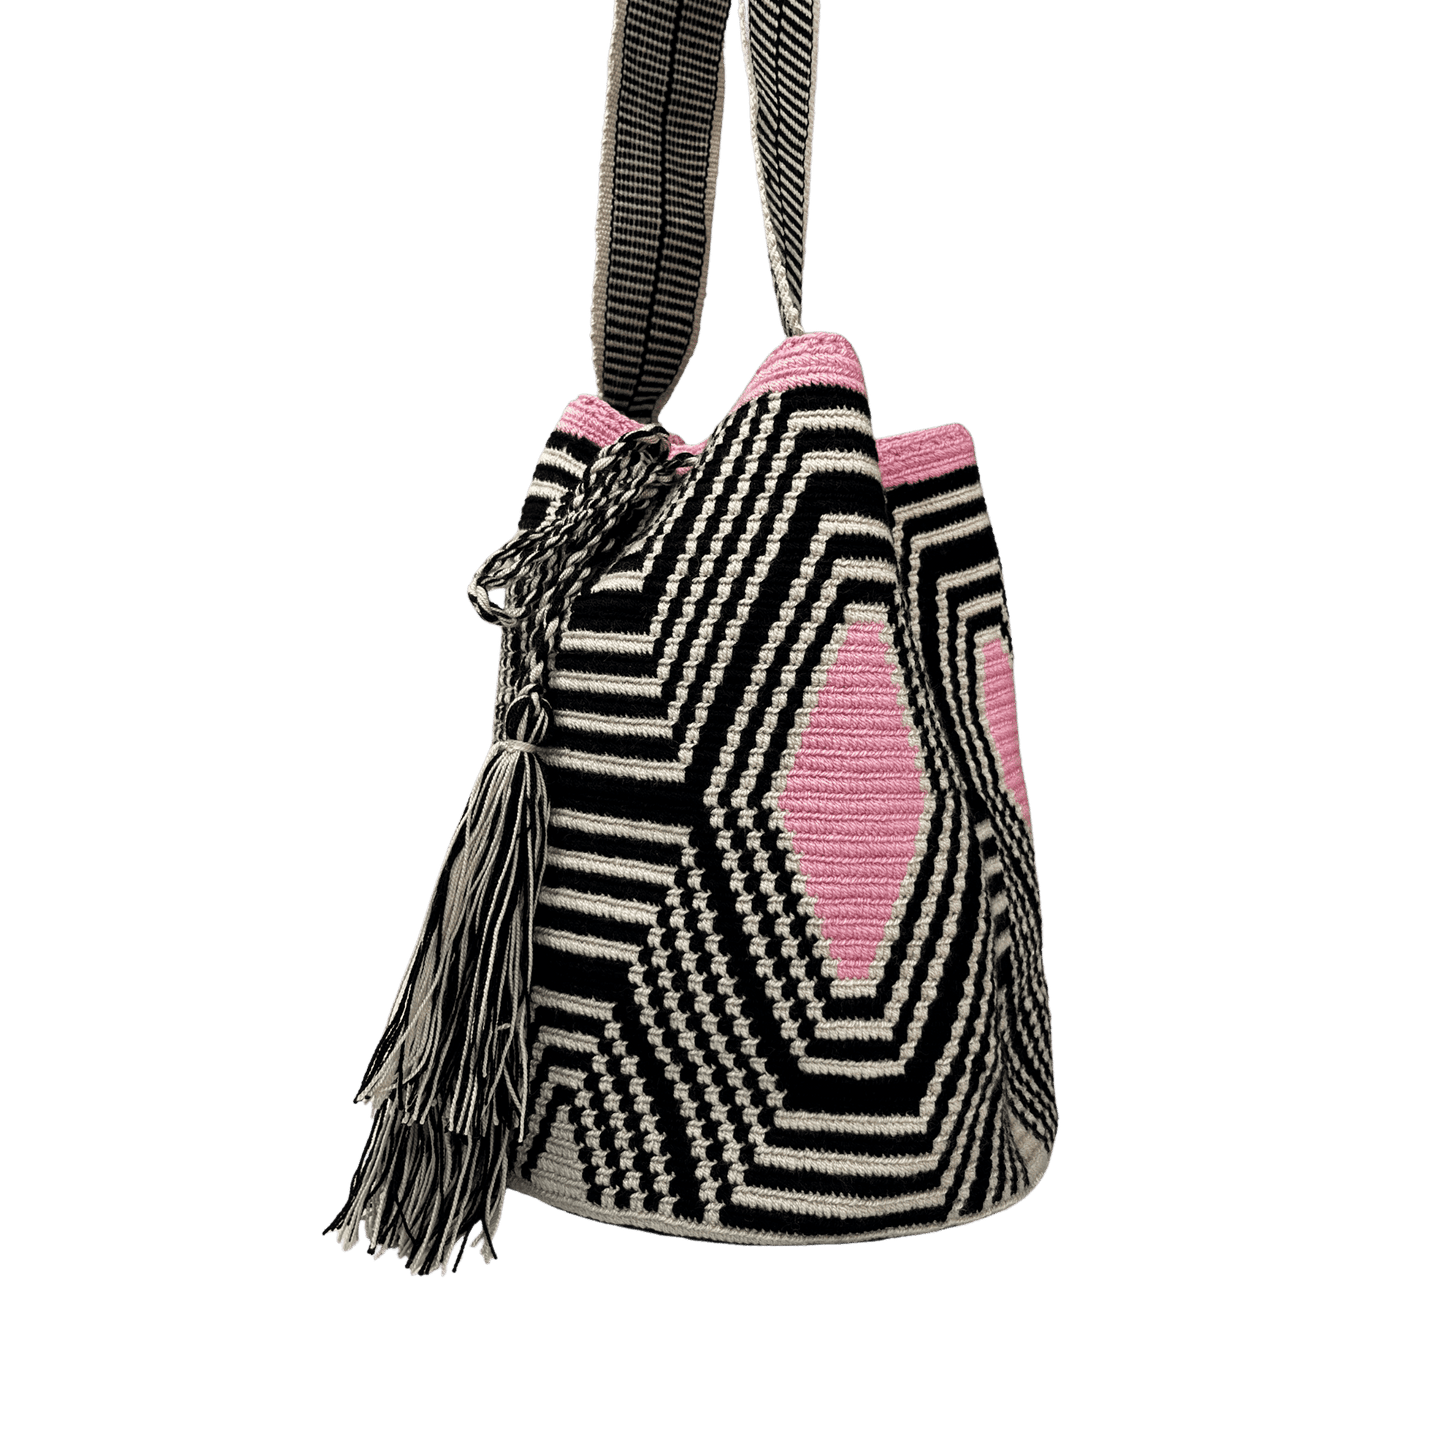 Mochila wayuu tejida a una hebra en colores negro, beige y rosado